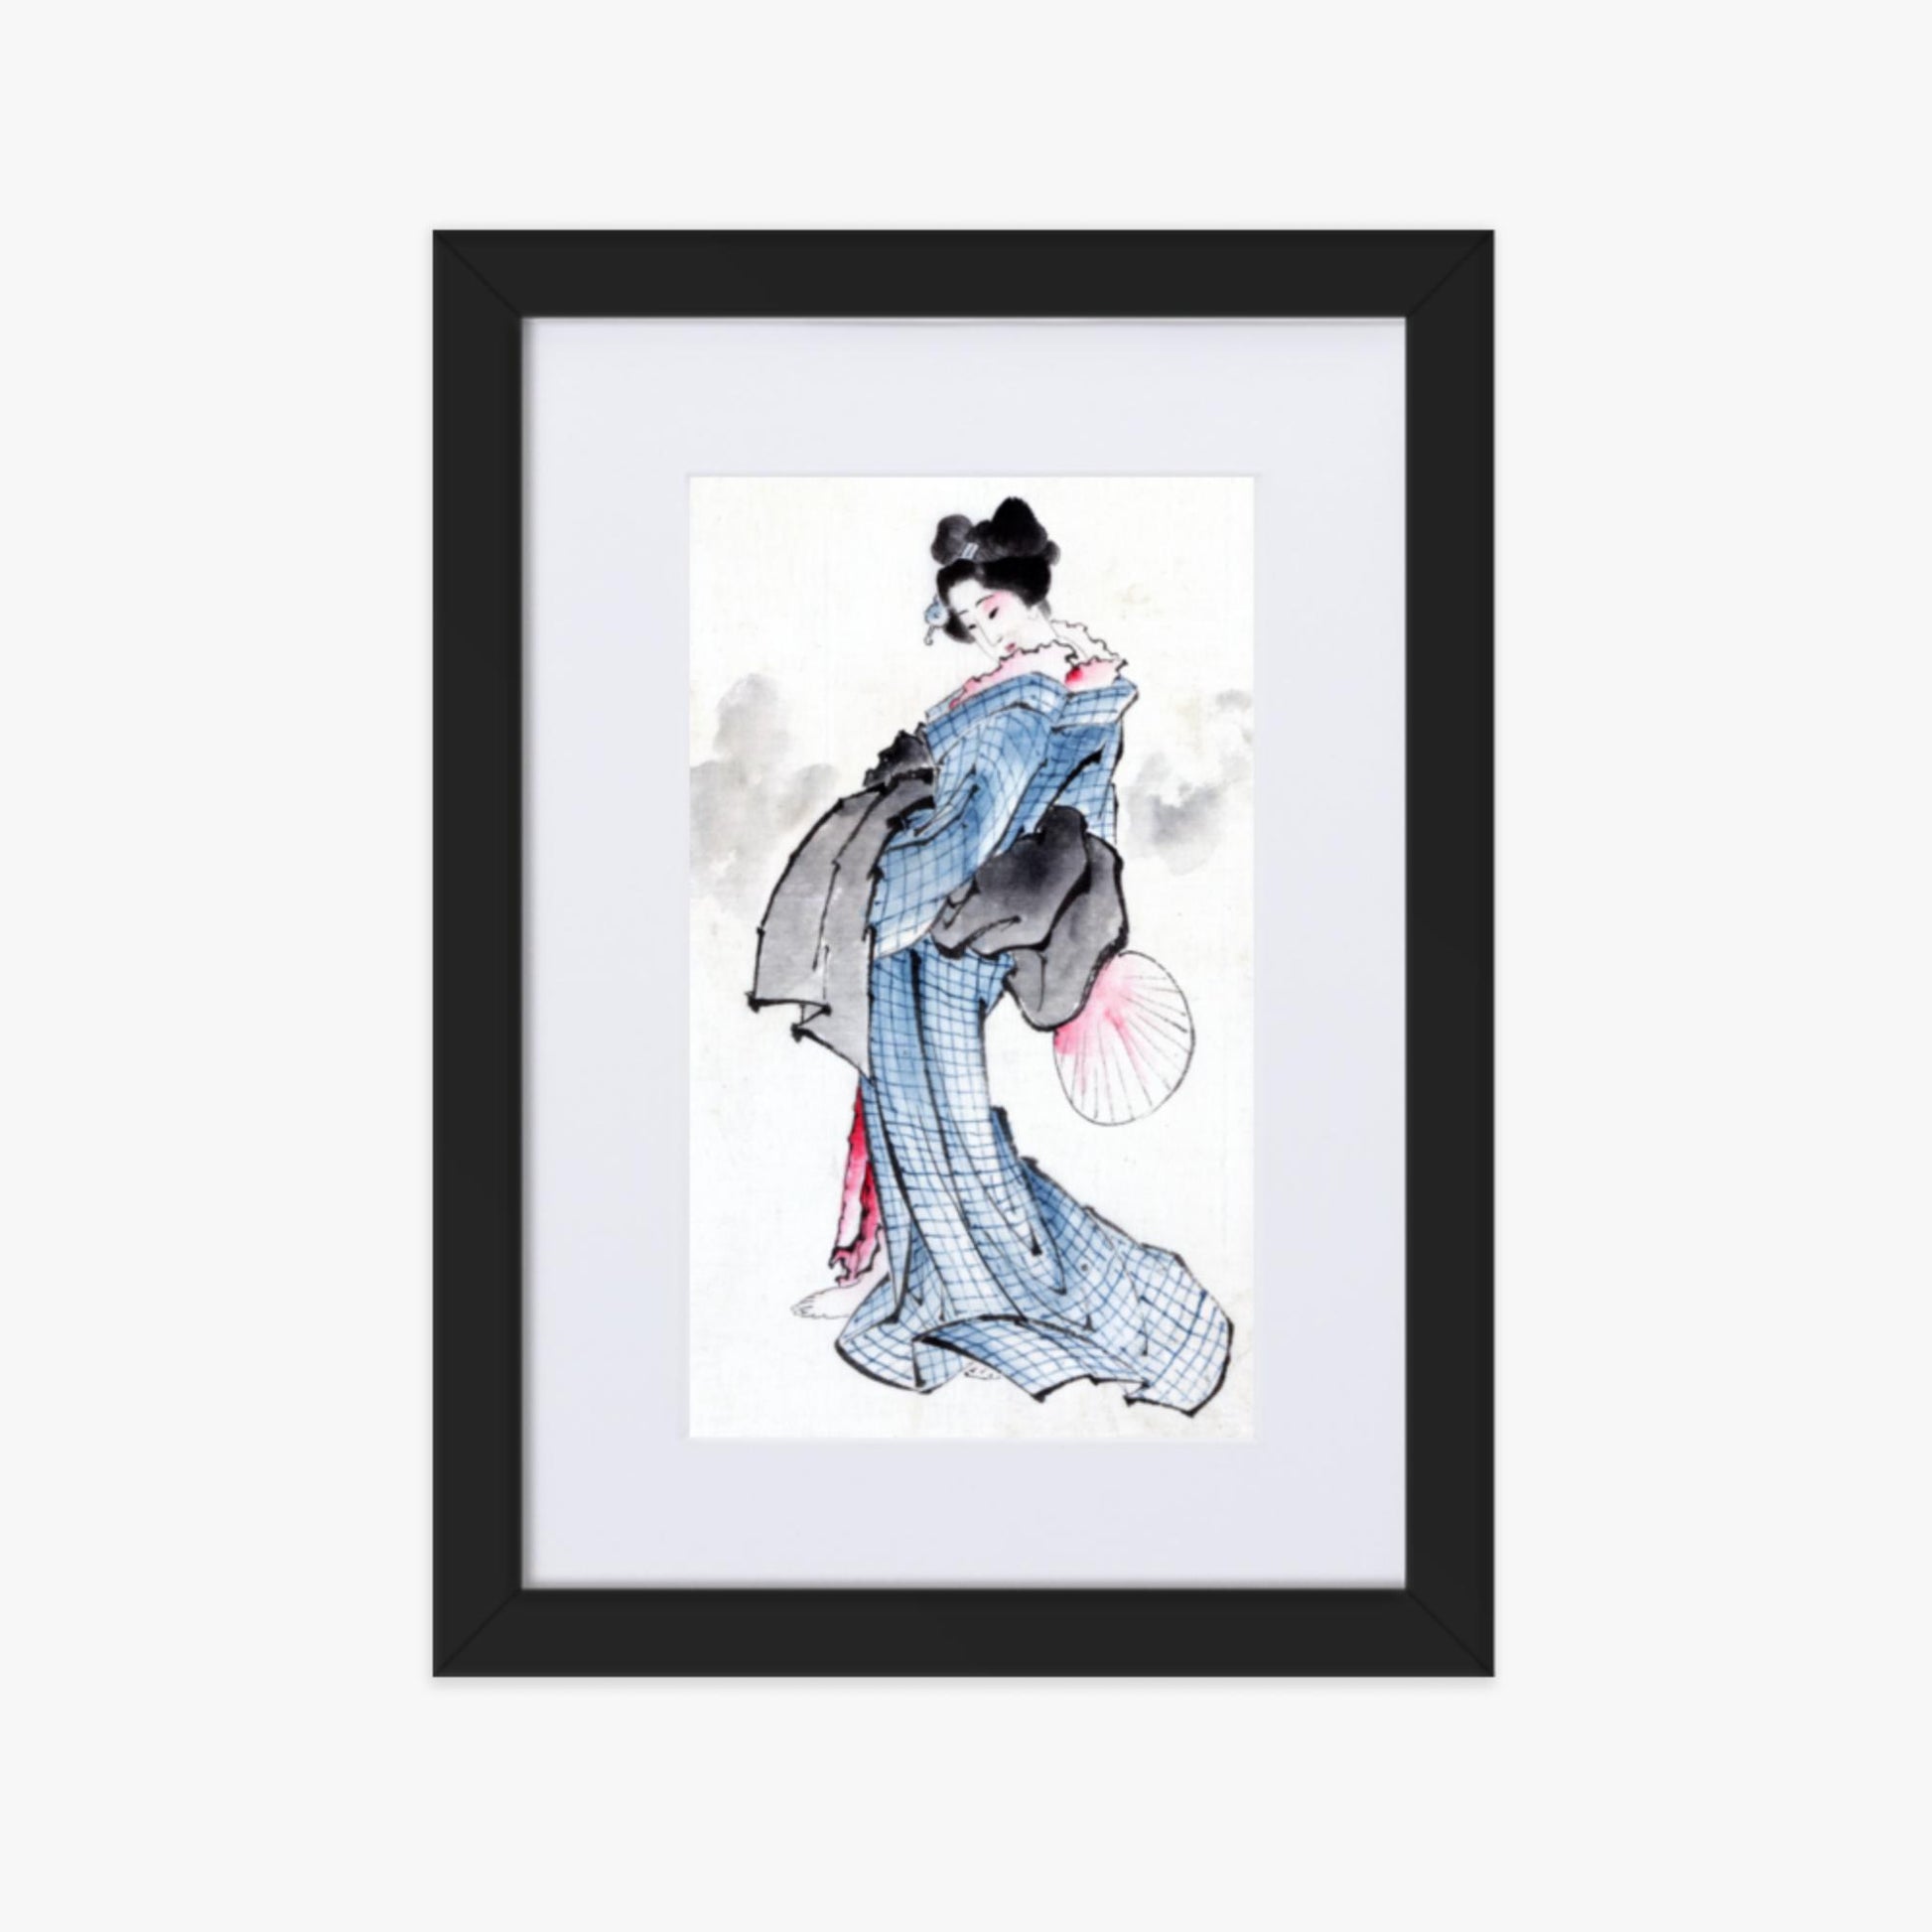 Katsushika Hokusai - Illustration of a Japanese Woman in Kimono 21x30 cm Poster With Black Frame